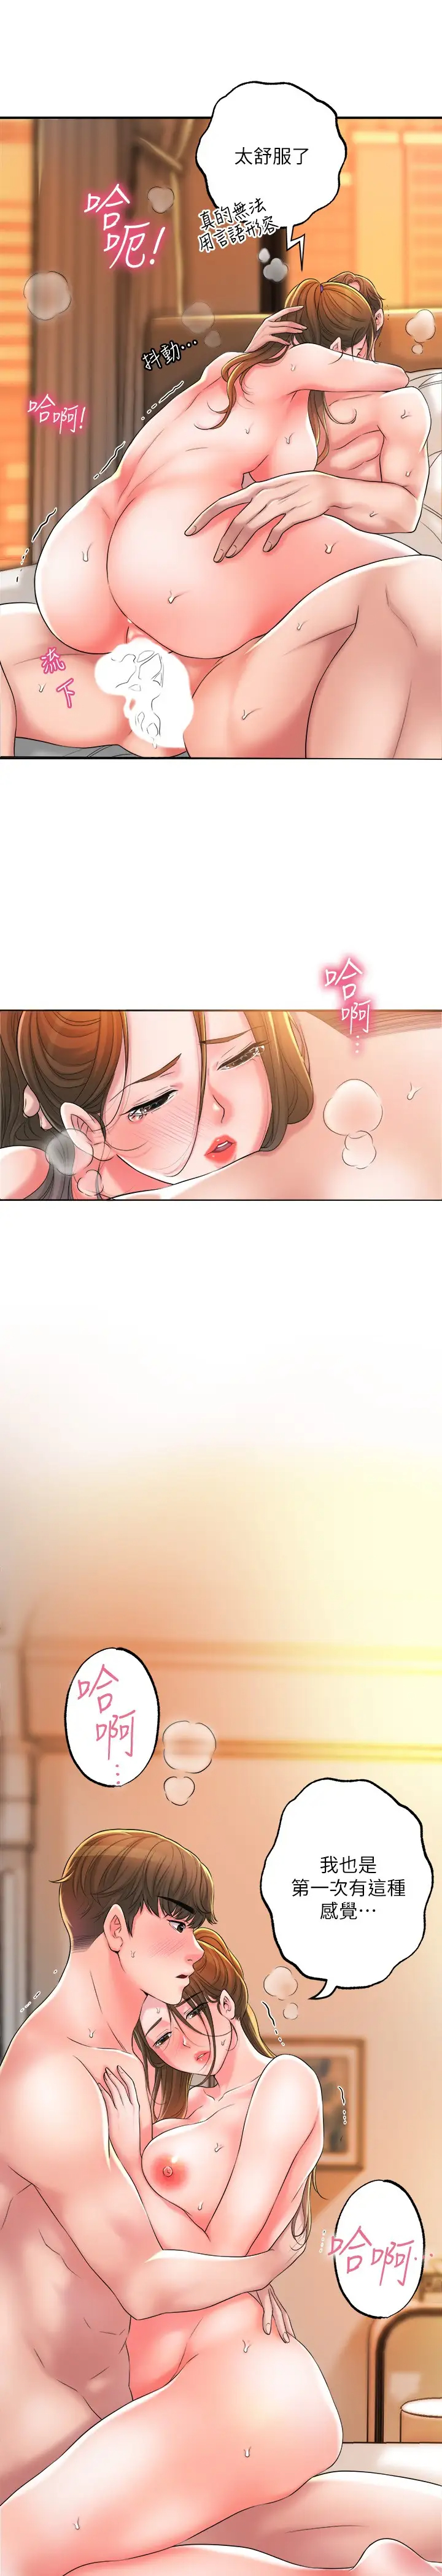 韩国污漫画 幸福督市 第14话 性爱中毒的两人 19